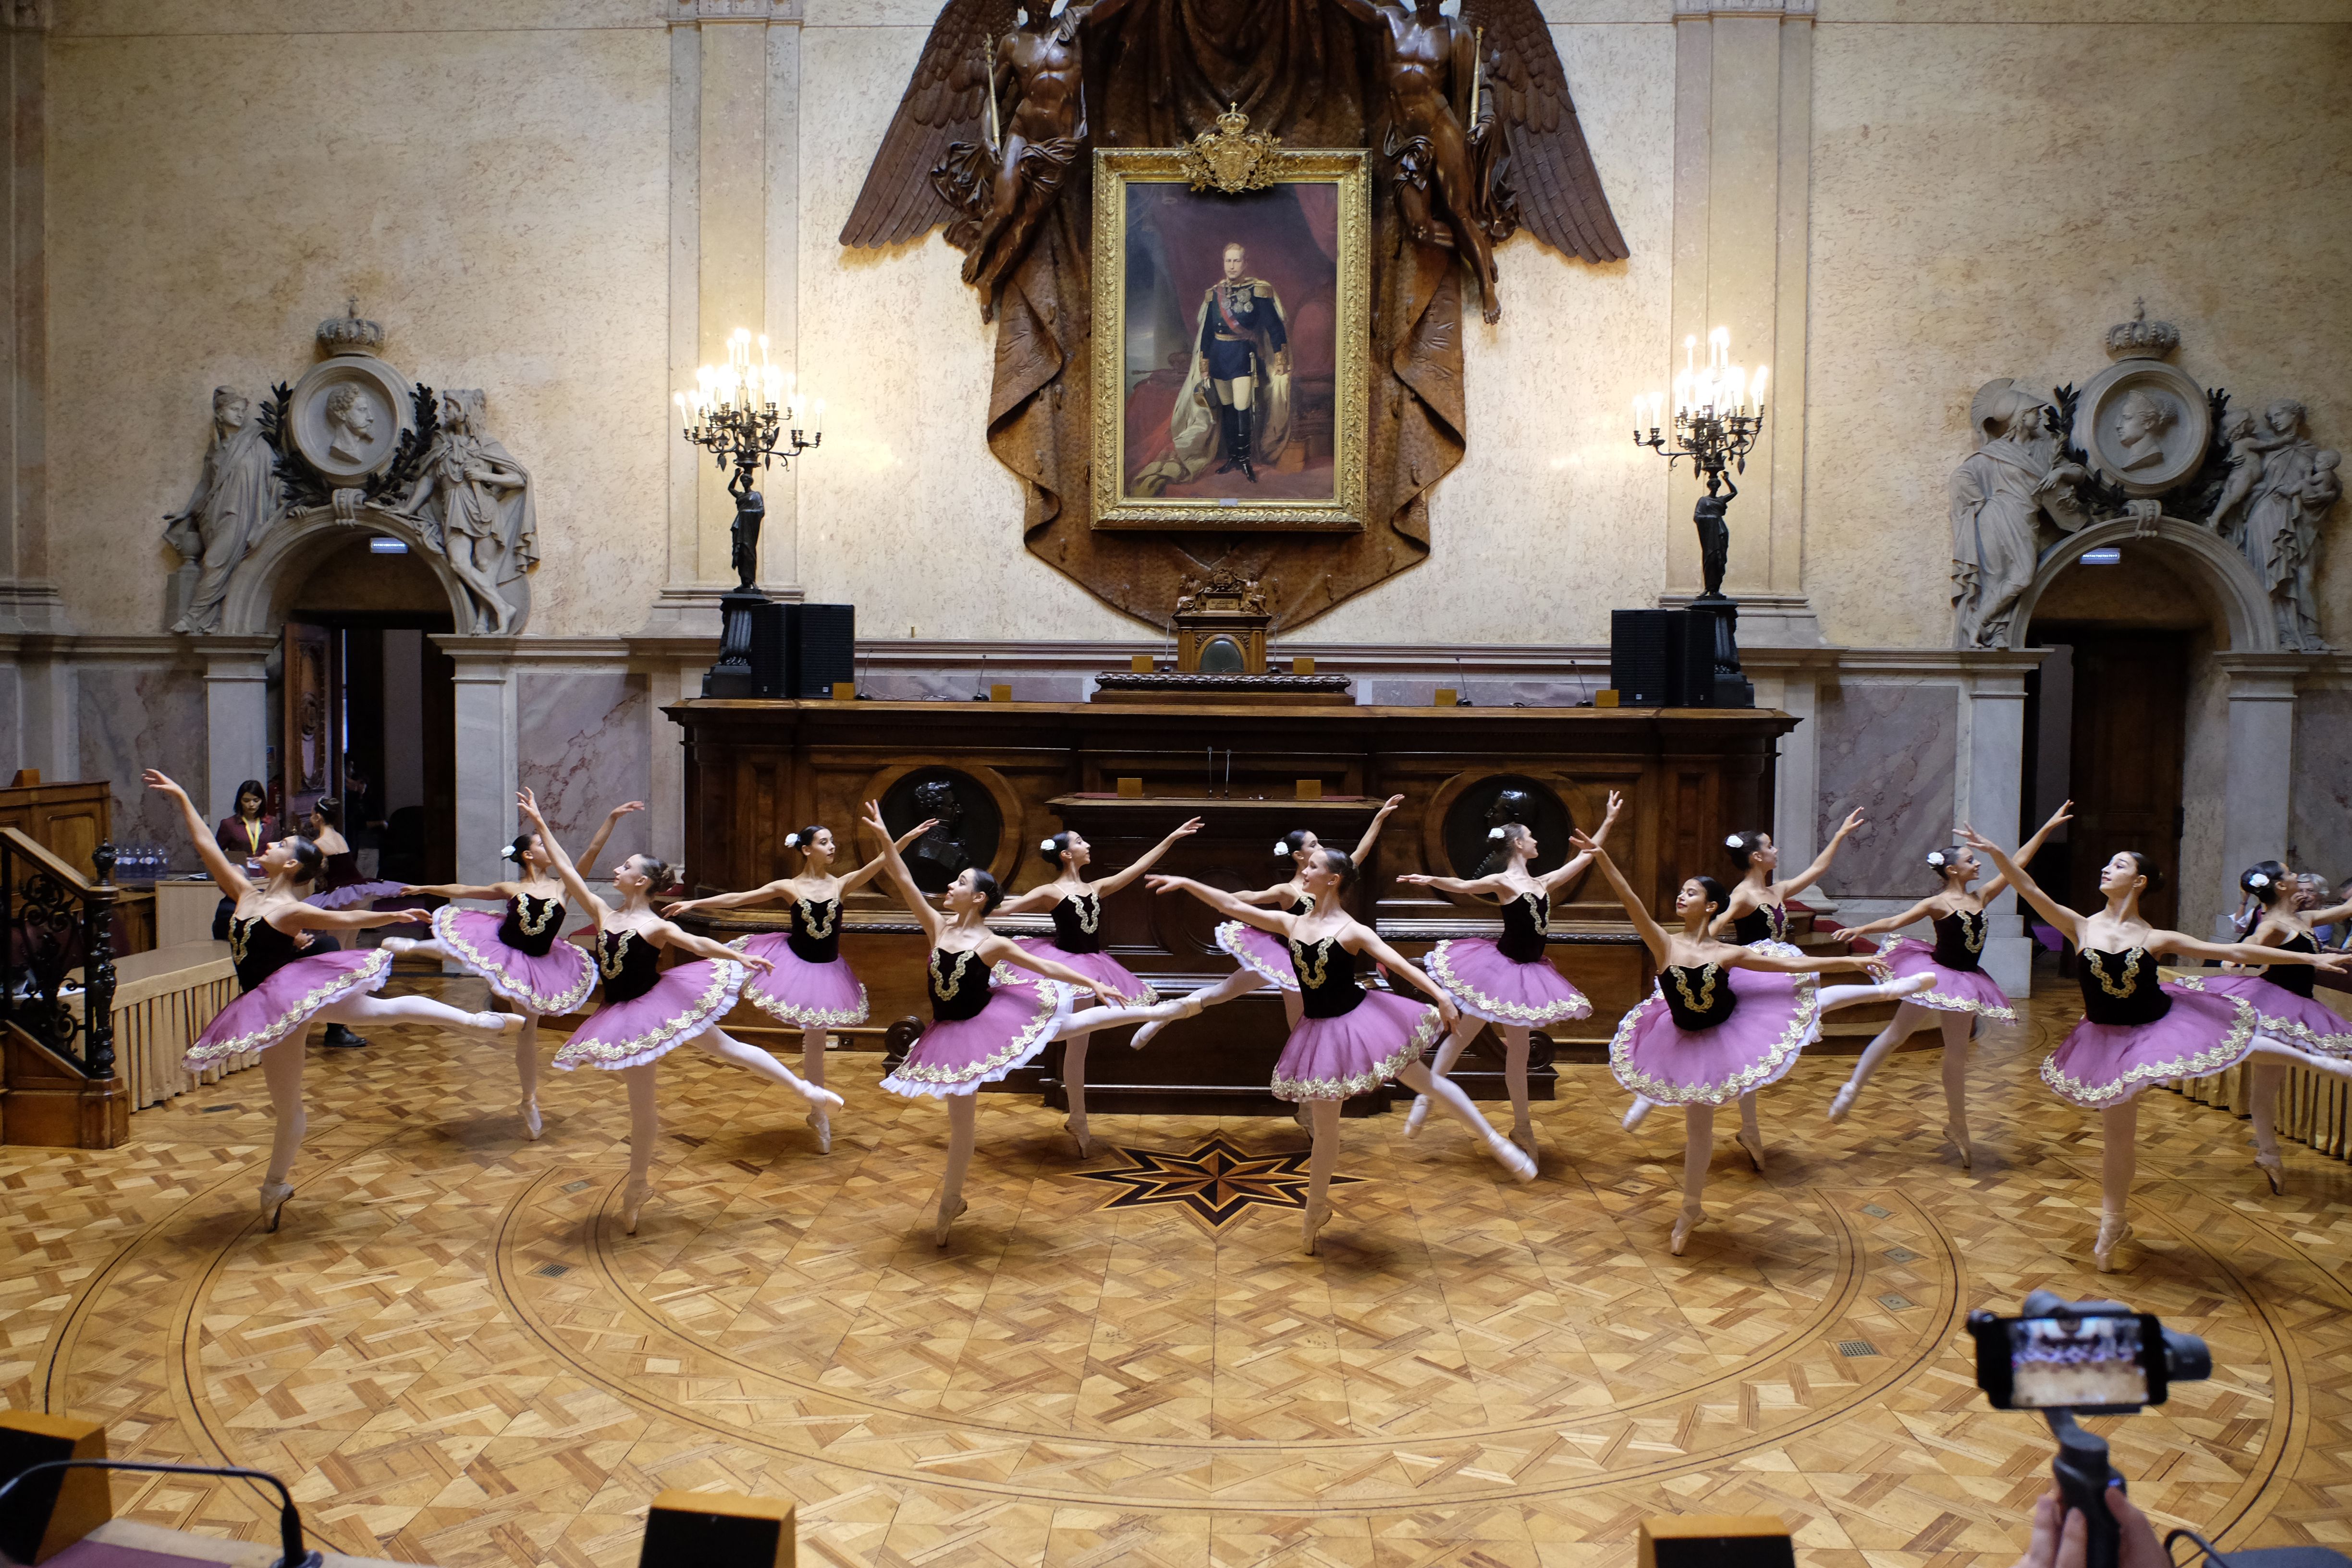  Atuação das alunas do Conservatório Internacional de Ballet e Dança Annarella Sanchez, de Leiria